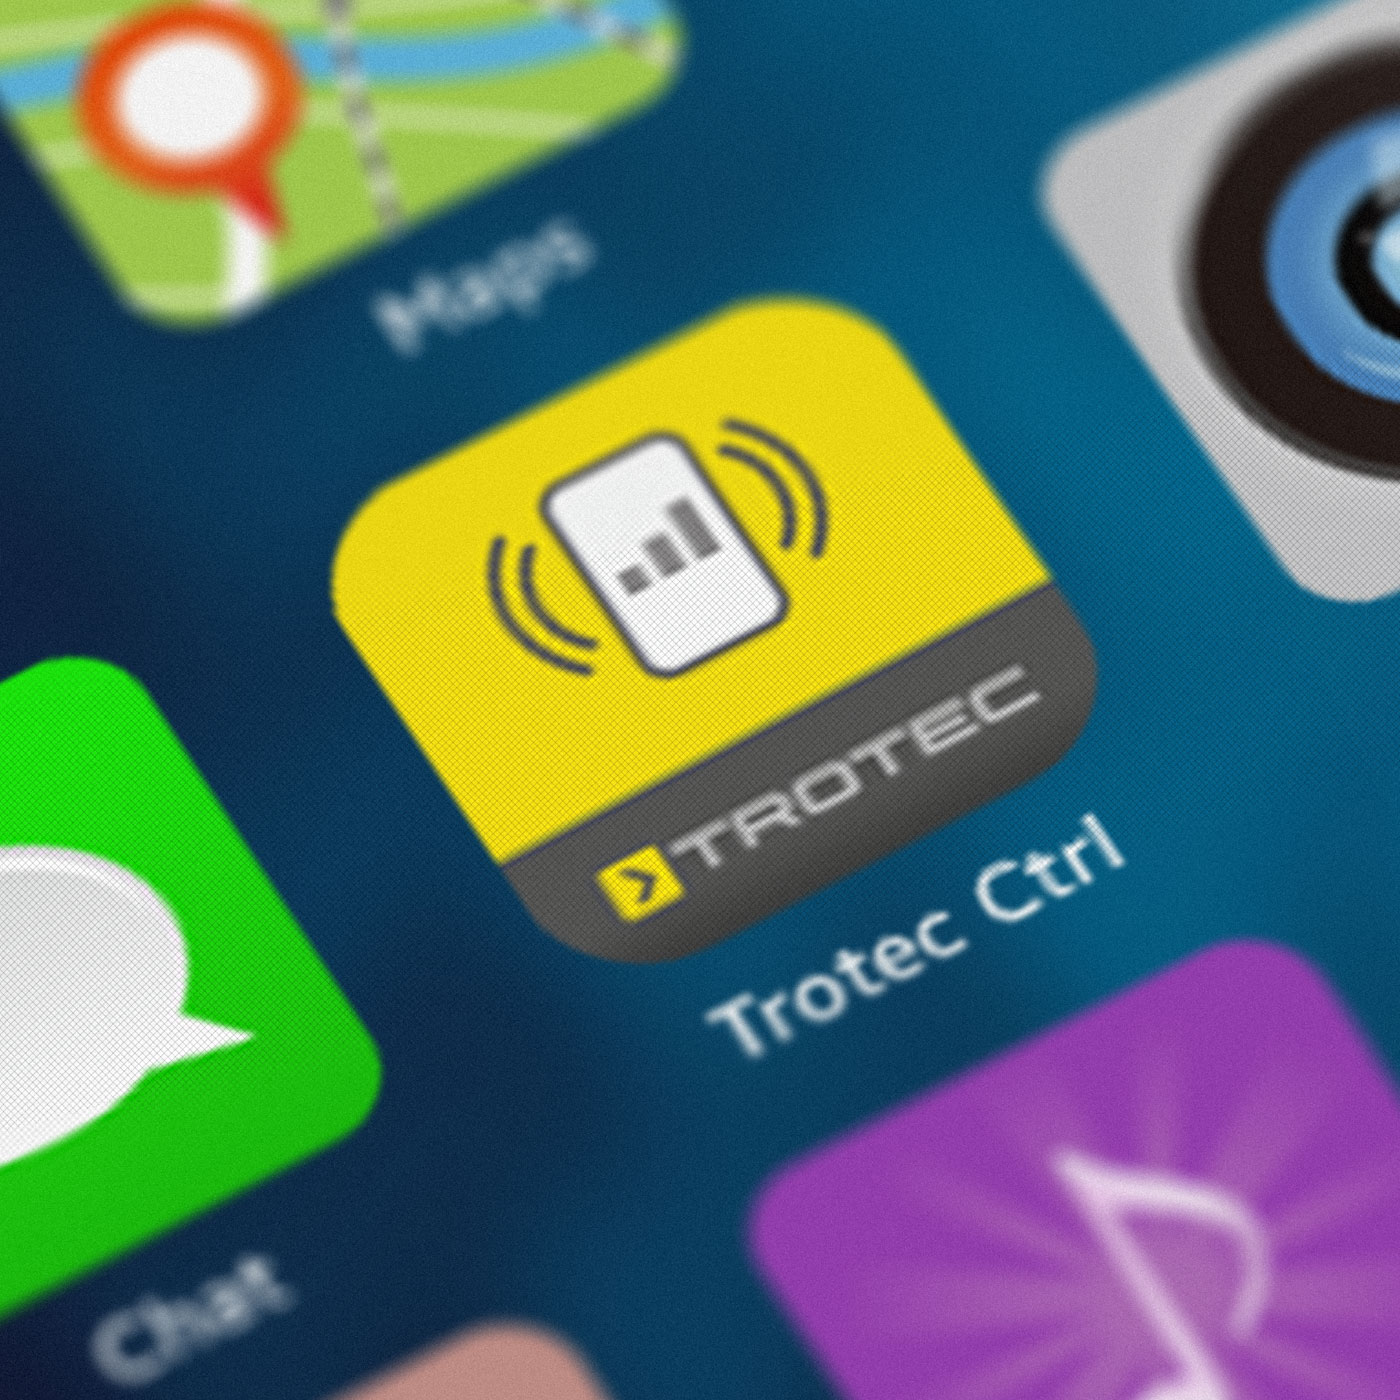 Trotec-Control uygulaması, Android ve iOS için ücretsiz olarak temin edilebilir